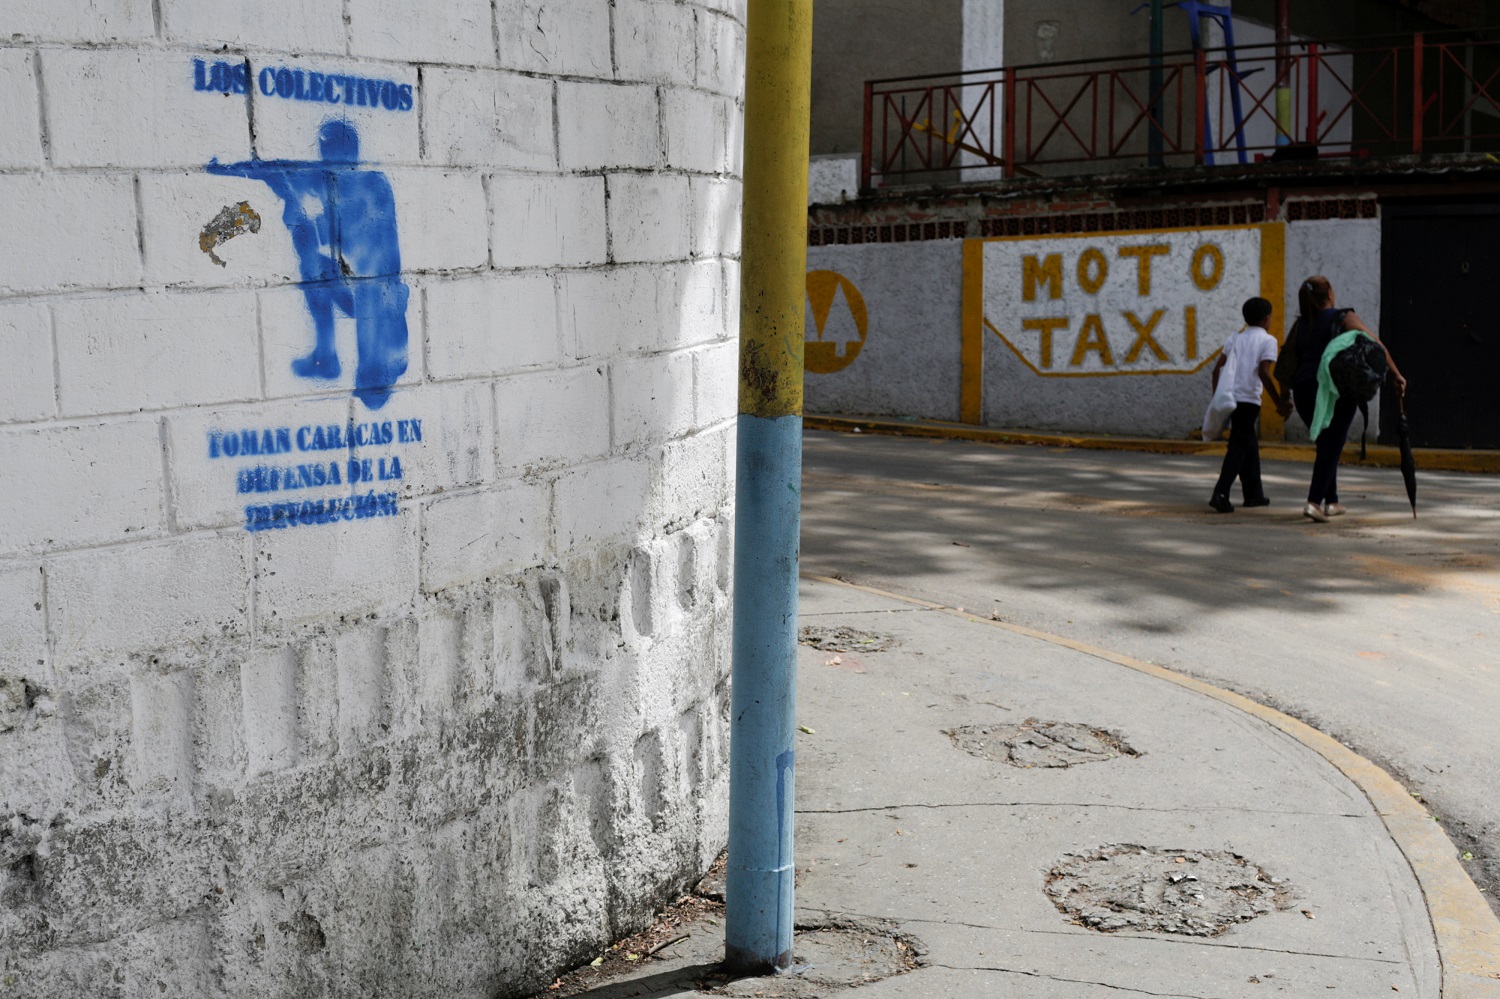 Un graffiti con la silueta de un hombre con un arma que dice "Los colectivos toman Caracas en defensa de la revolución" se ve en una calle del barrio de los 23 de Enero en Caracas, Venezuela el 19 de mayo de 2017. Foto tomada el 19 de mayo de 2017 REUTERS / Marco Bello